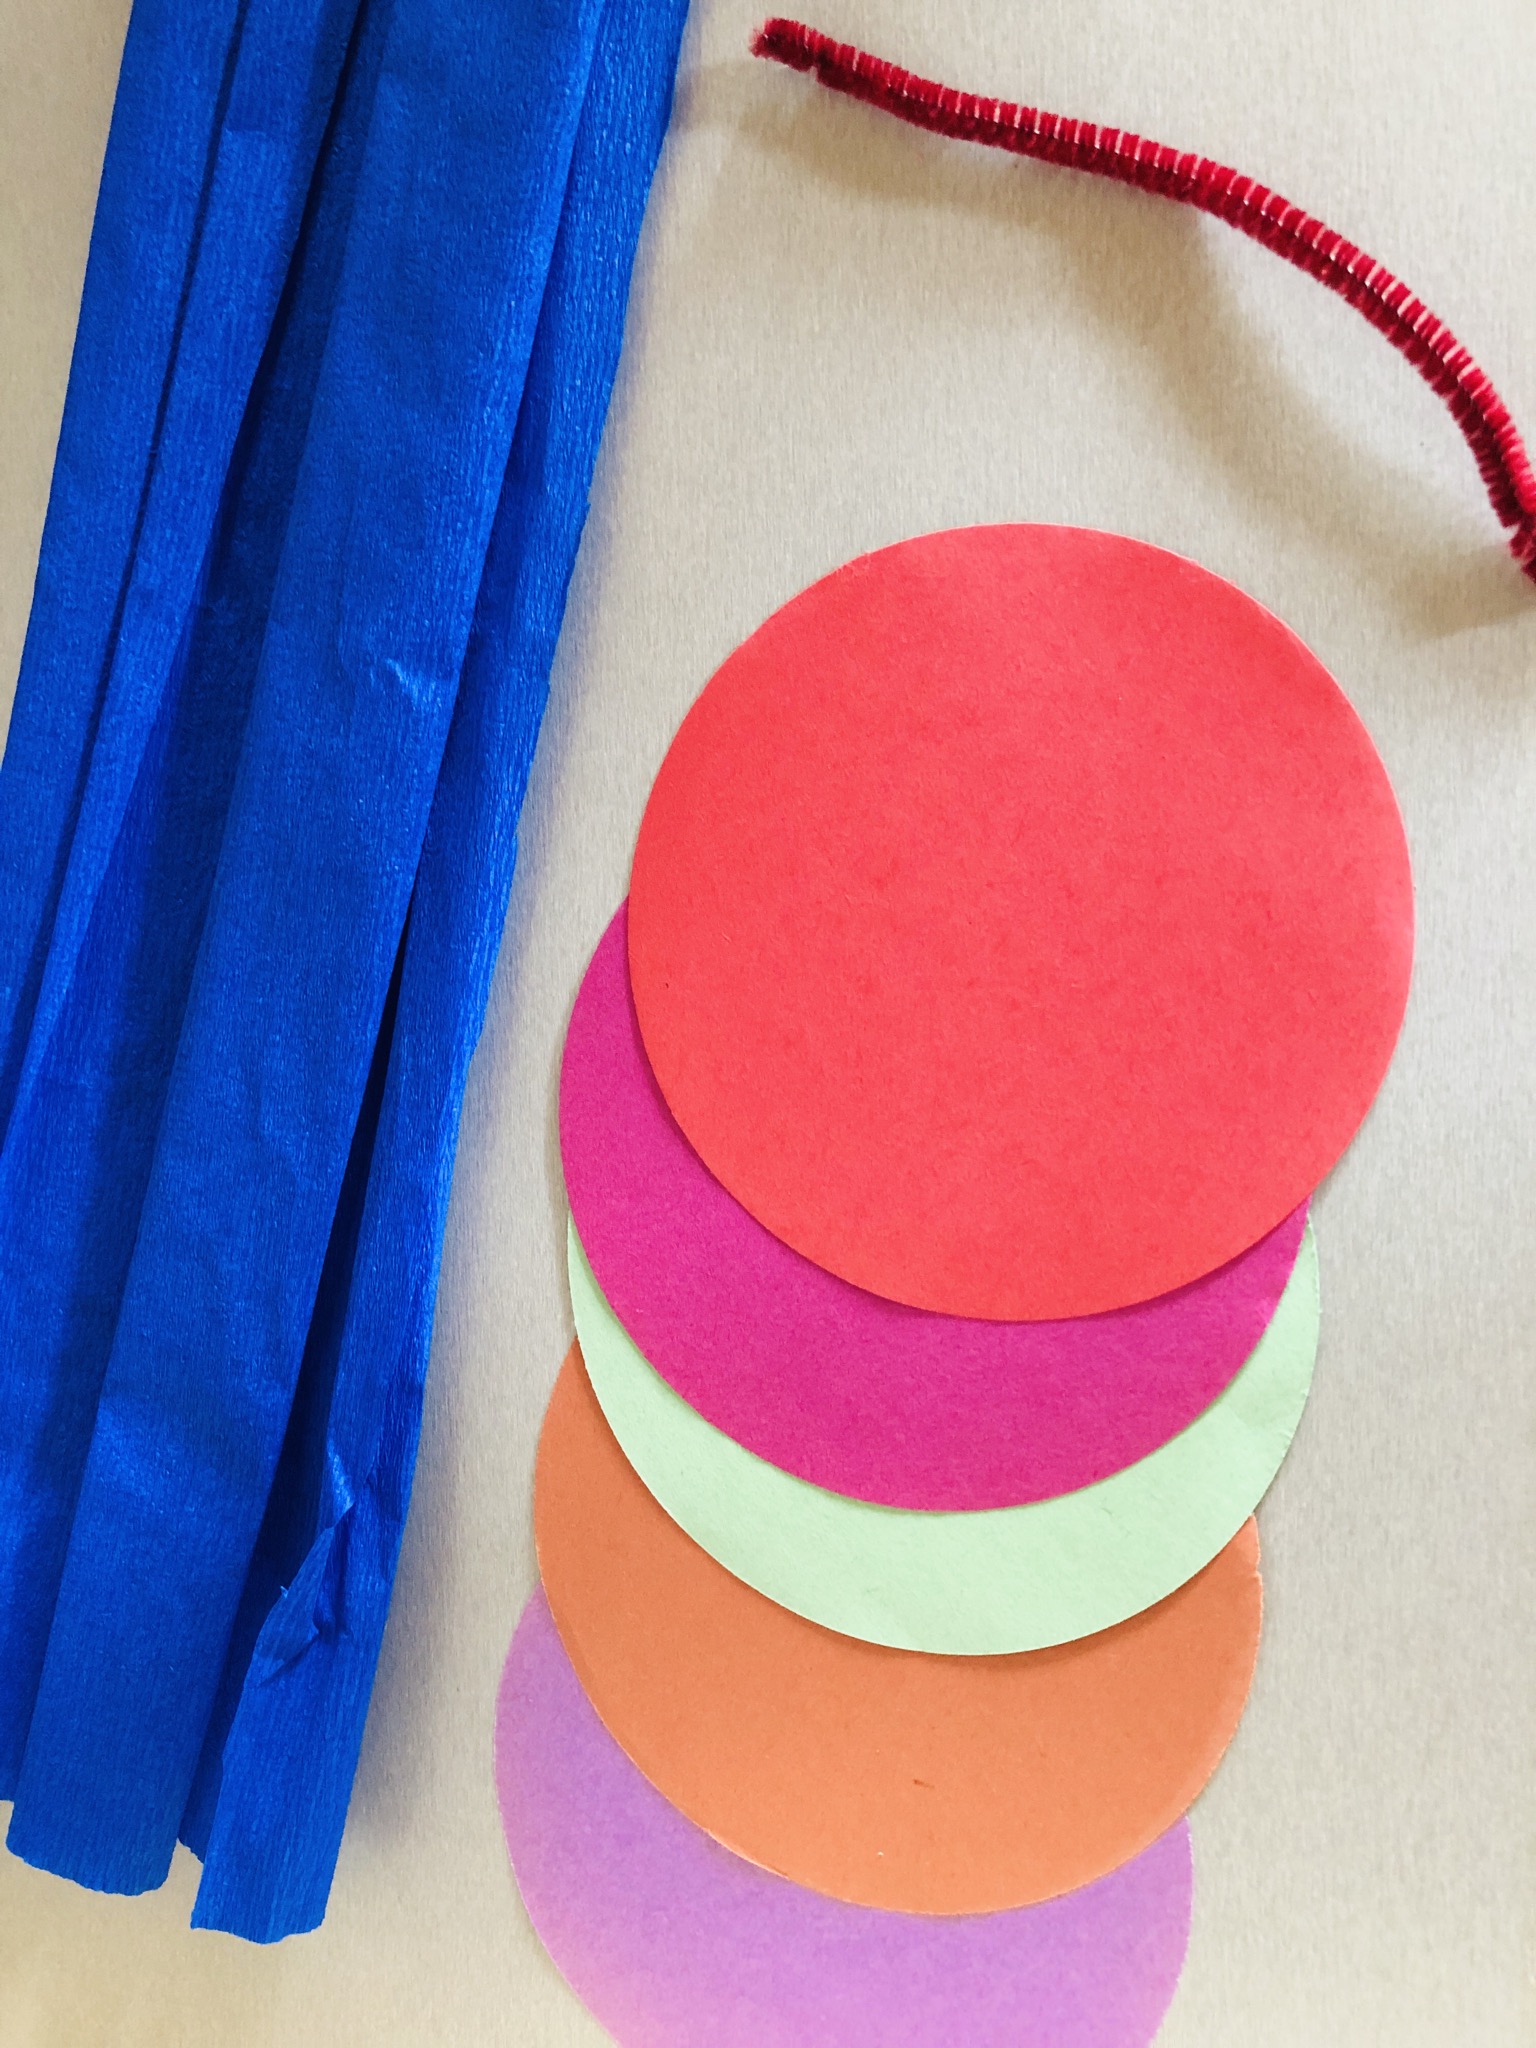 Bild zum Schritt 1 für die Kinder-Beschäftigung: 'Runde Faltpapiere in verschiedenen Farben und Pfeifenputzer bereit legen.'